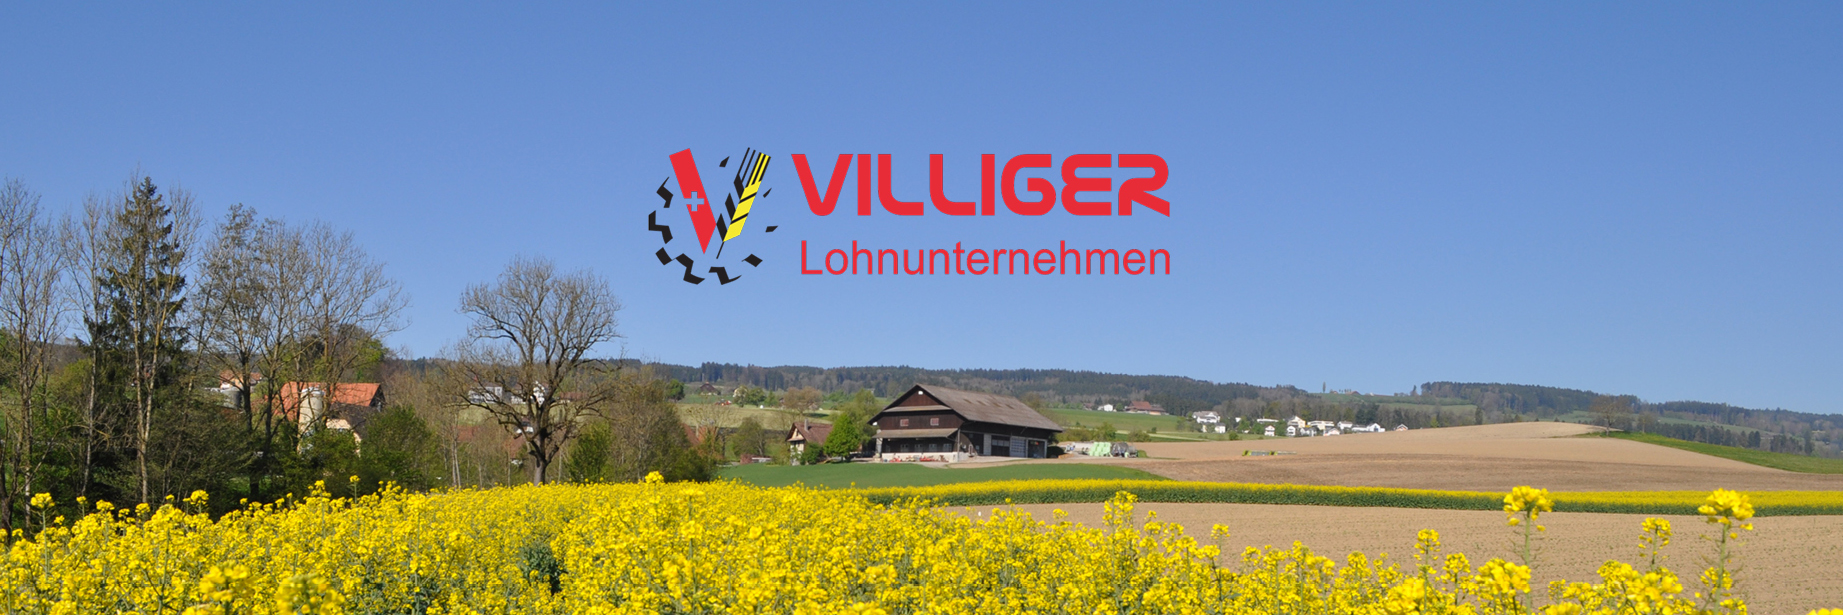 (c) Villiger-lohnunternehmen.ch